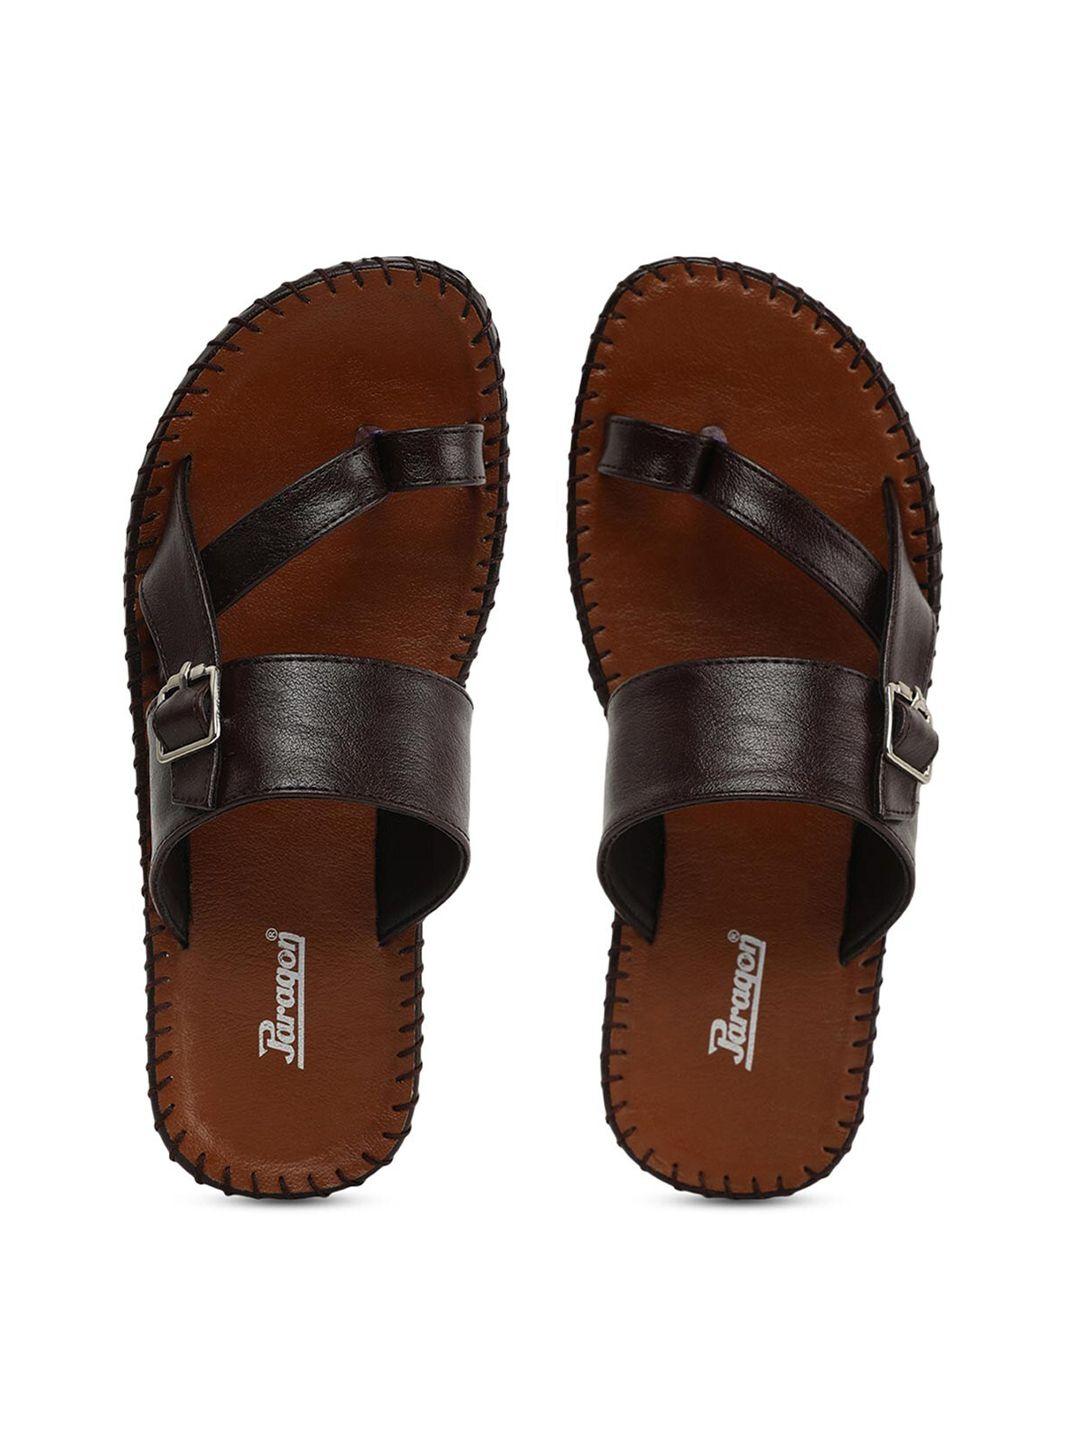 paragon men brown & tan comfort sandals